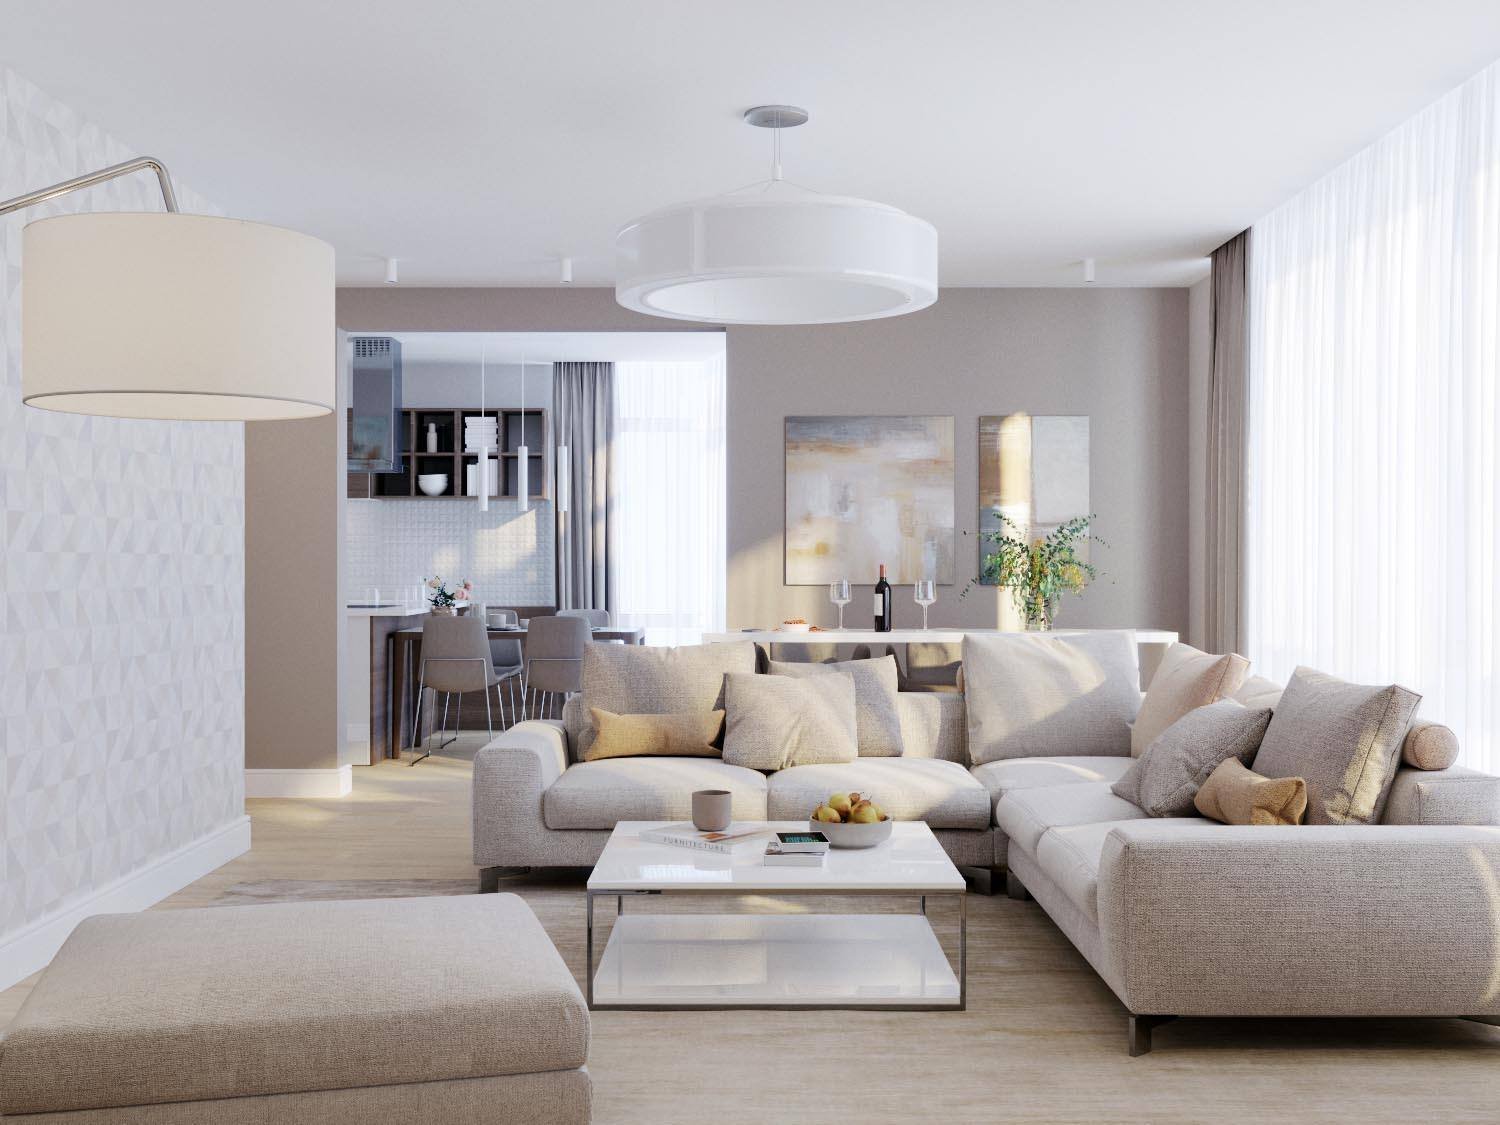 Классический дизайн интерьера квартиры в светлых тонах